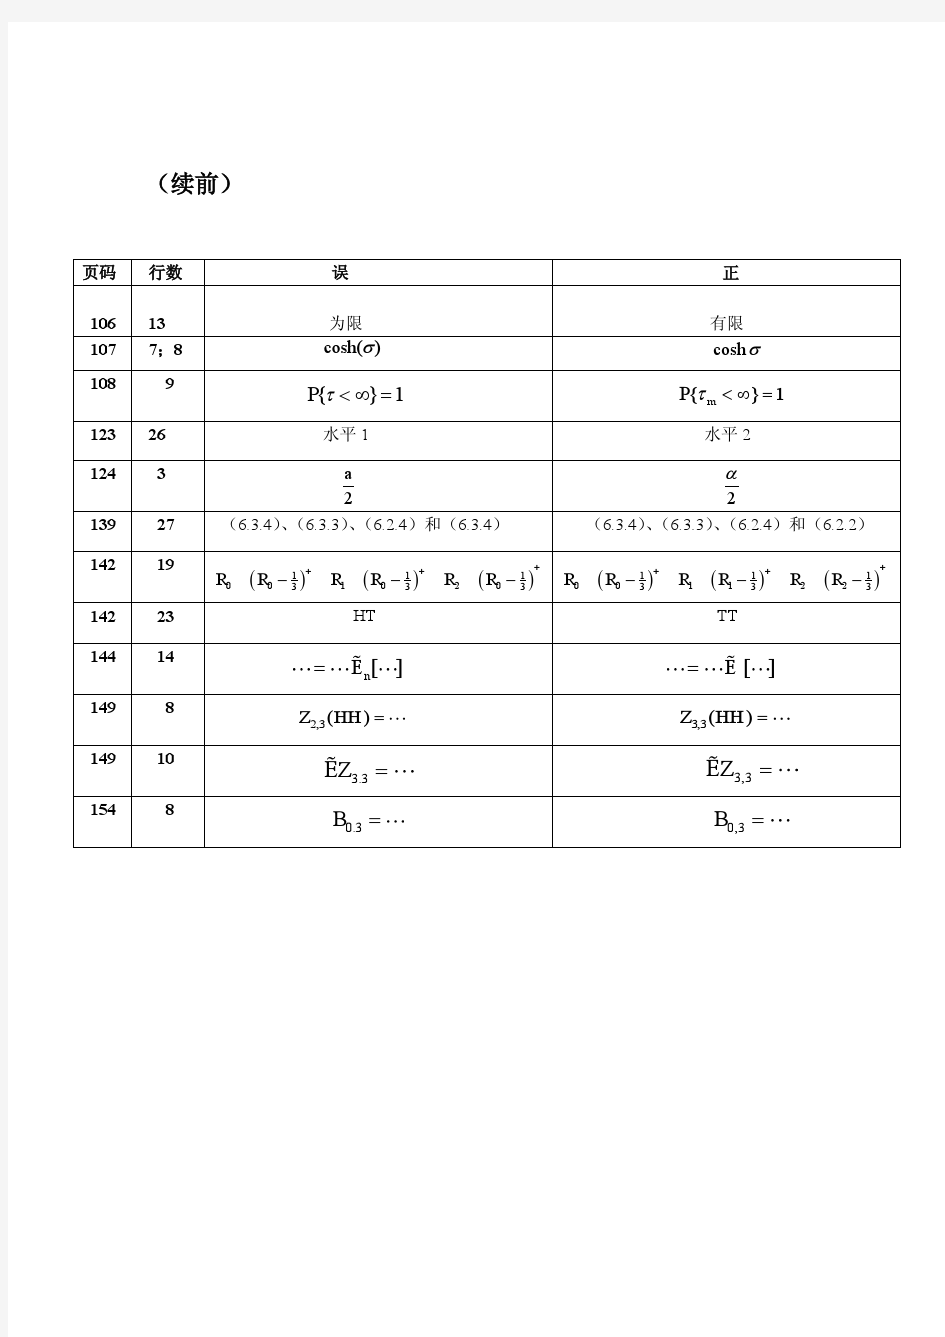 《金融随机分析》(中文版)勘误表(第一卷)